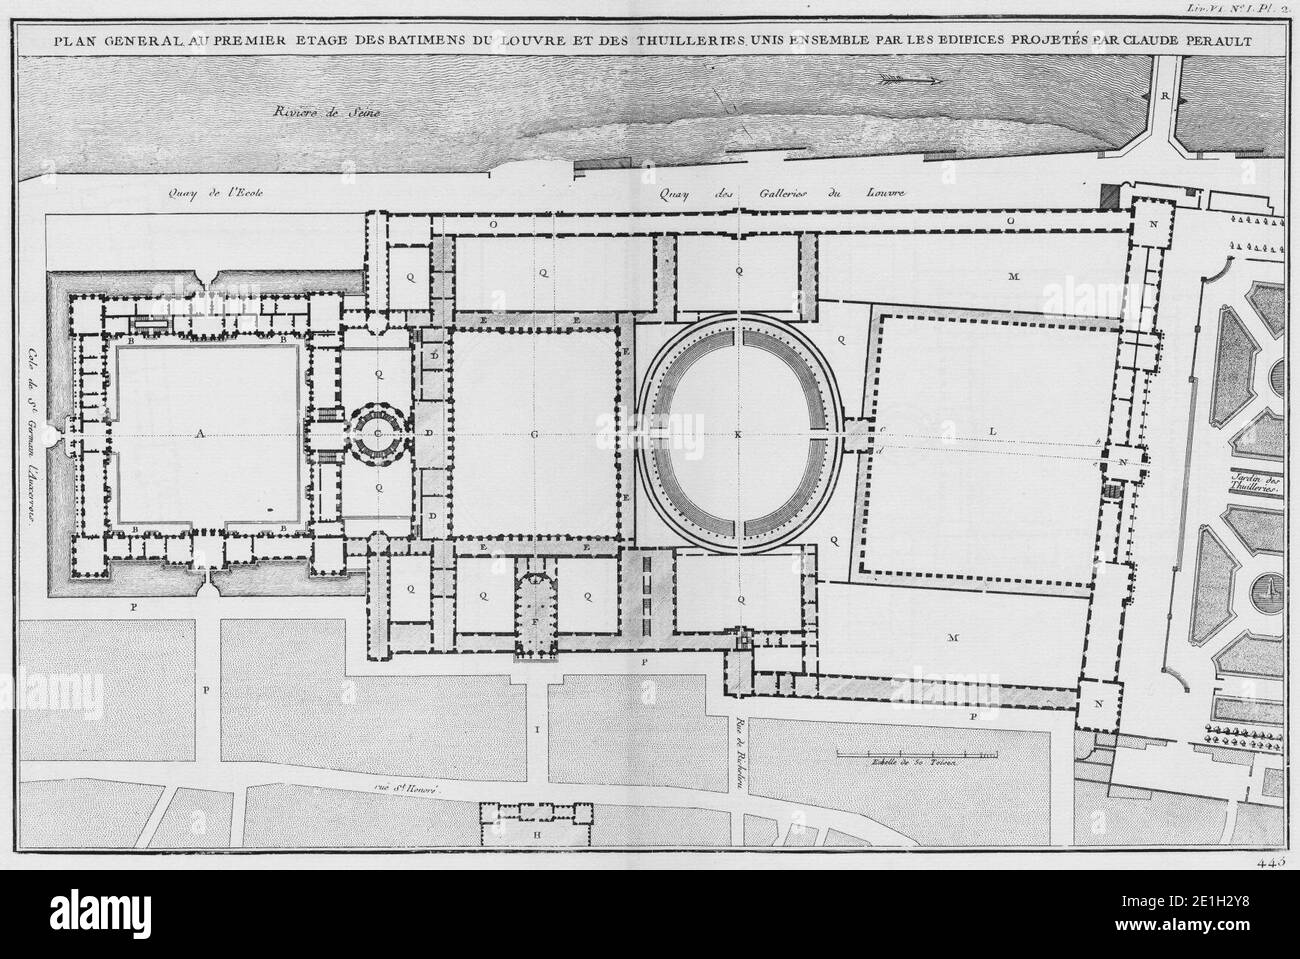 Louvre et Tuileries - Plan général suivant le deuxième projet de Claude Perrault - Architecture françoise Tome4 Livre6 PL2. Banque D'Images